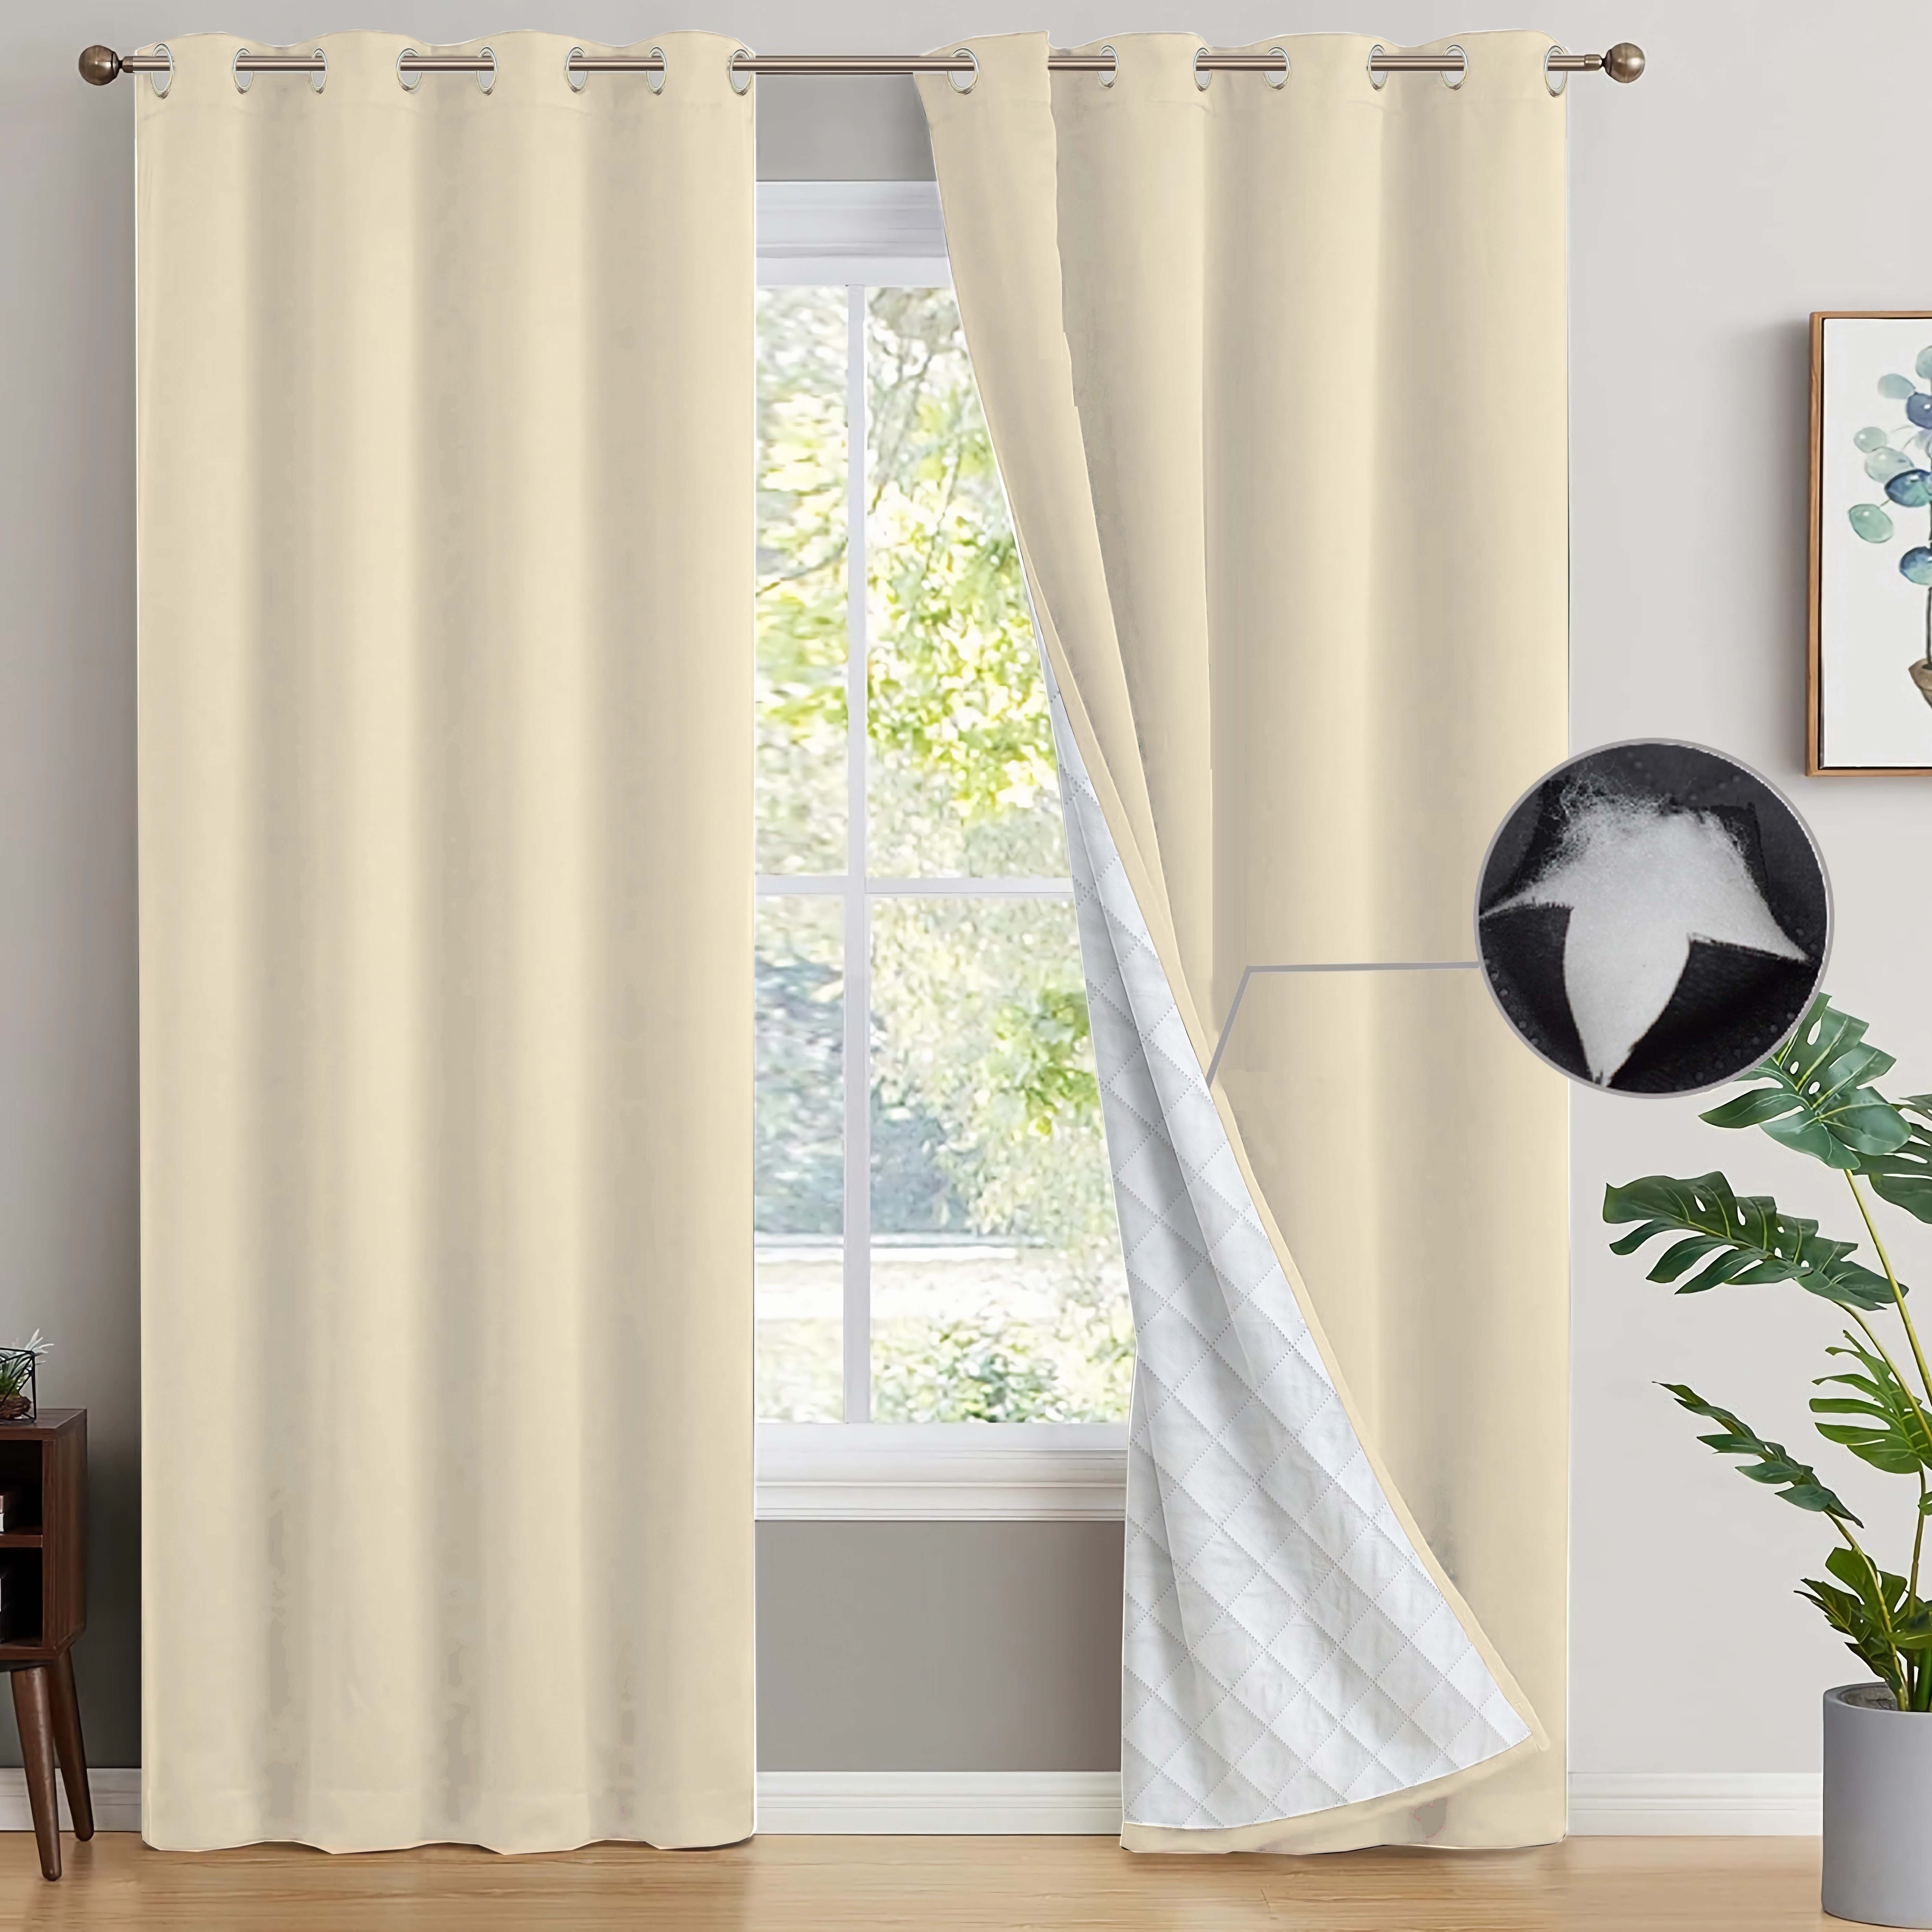 Cortinas modernas con aislamiento acústico, cortinas cálidas con